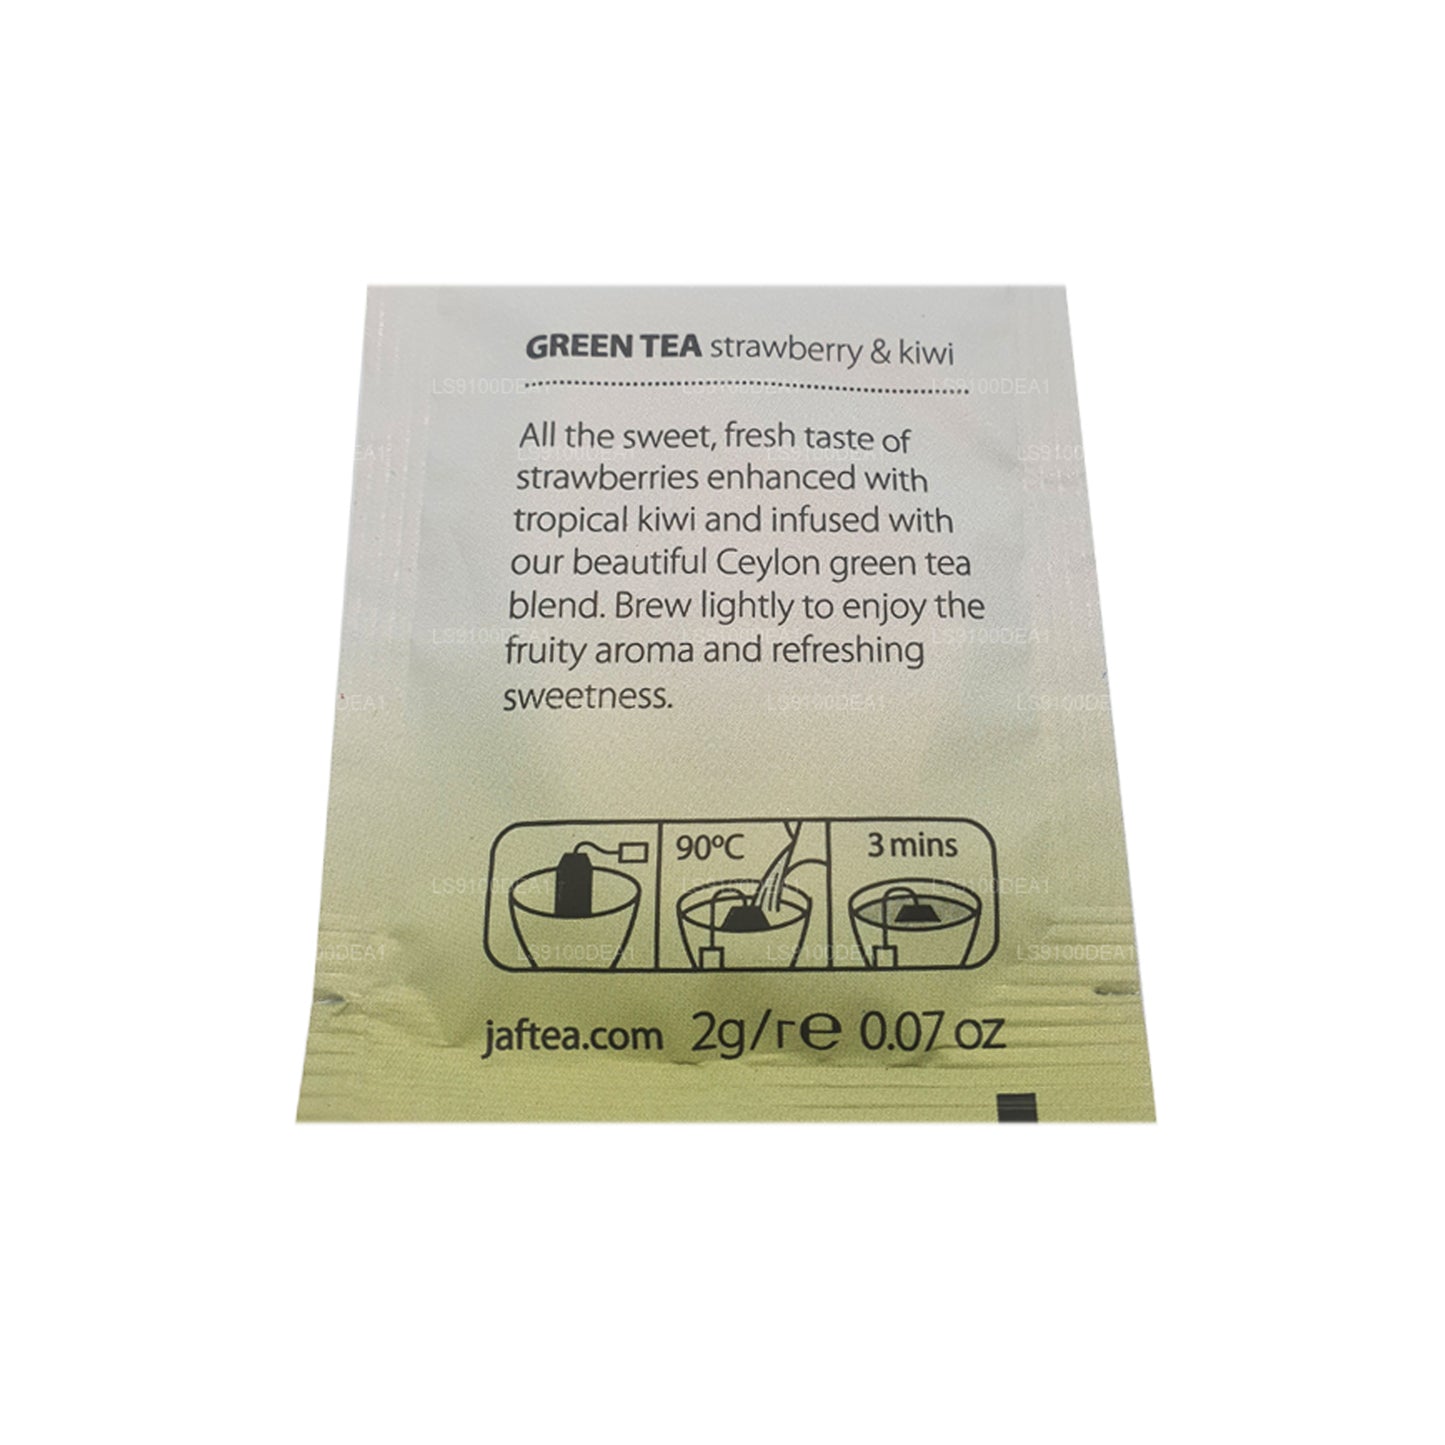 Jaf Tea Pure Green Collection Foil Envelop Tea Bags (160g)